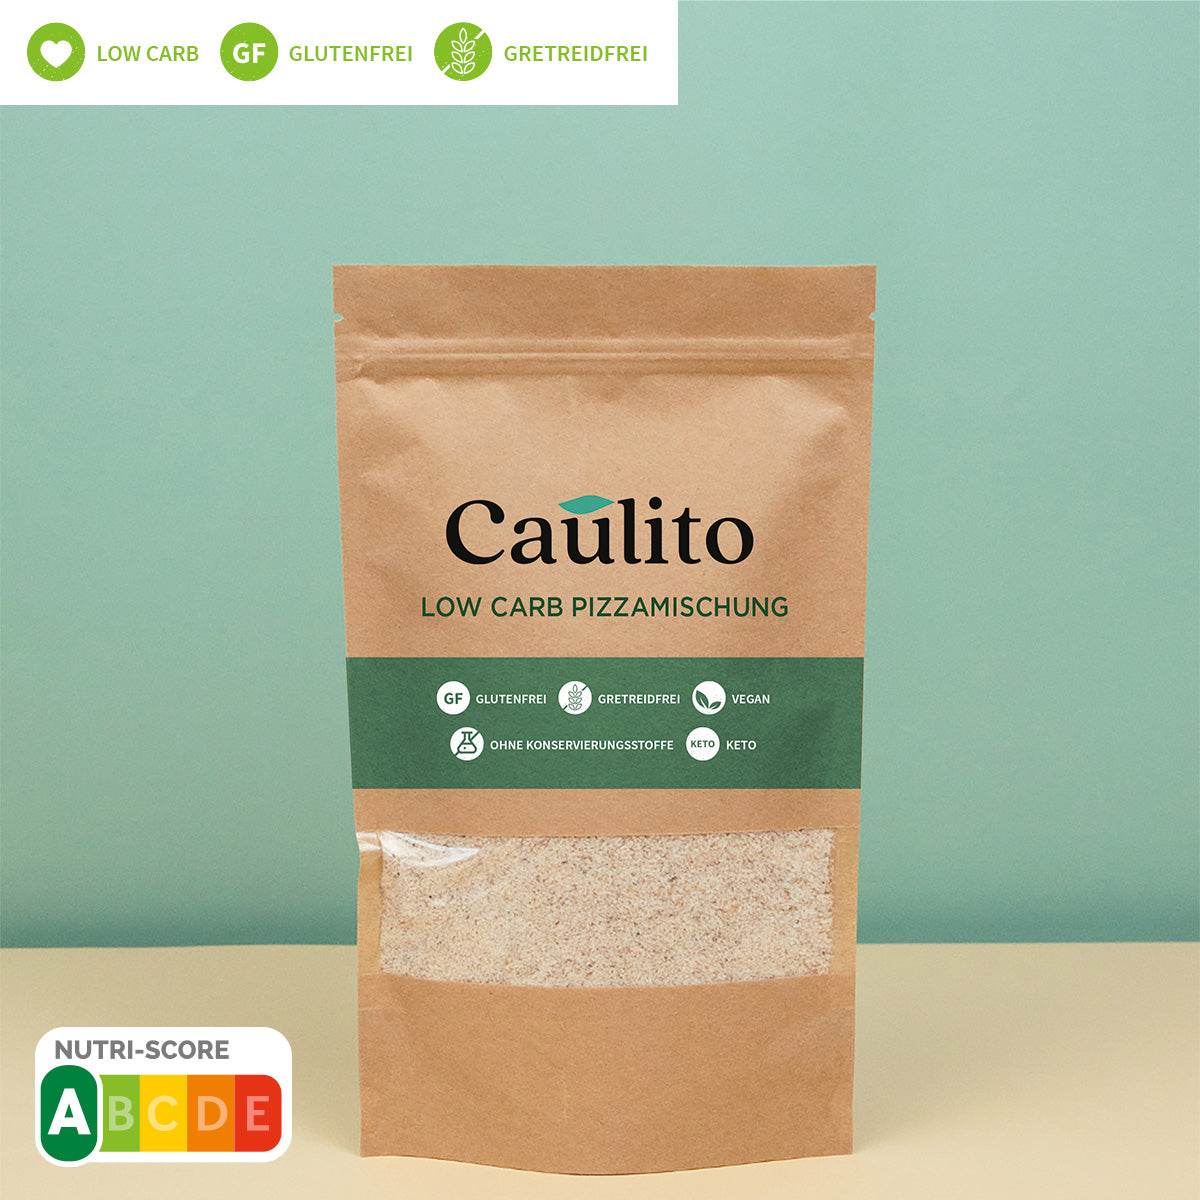 Caulito Packung Low Carb Backmischung, perfekte Lösung für gluten- und getreidefreies Backen, proteinreiches und kohlenhydratarmes Superfood-Frühstücksmüsli, 250g.